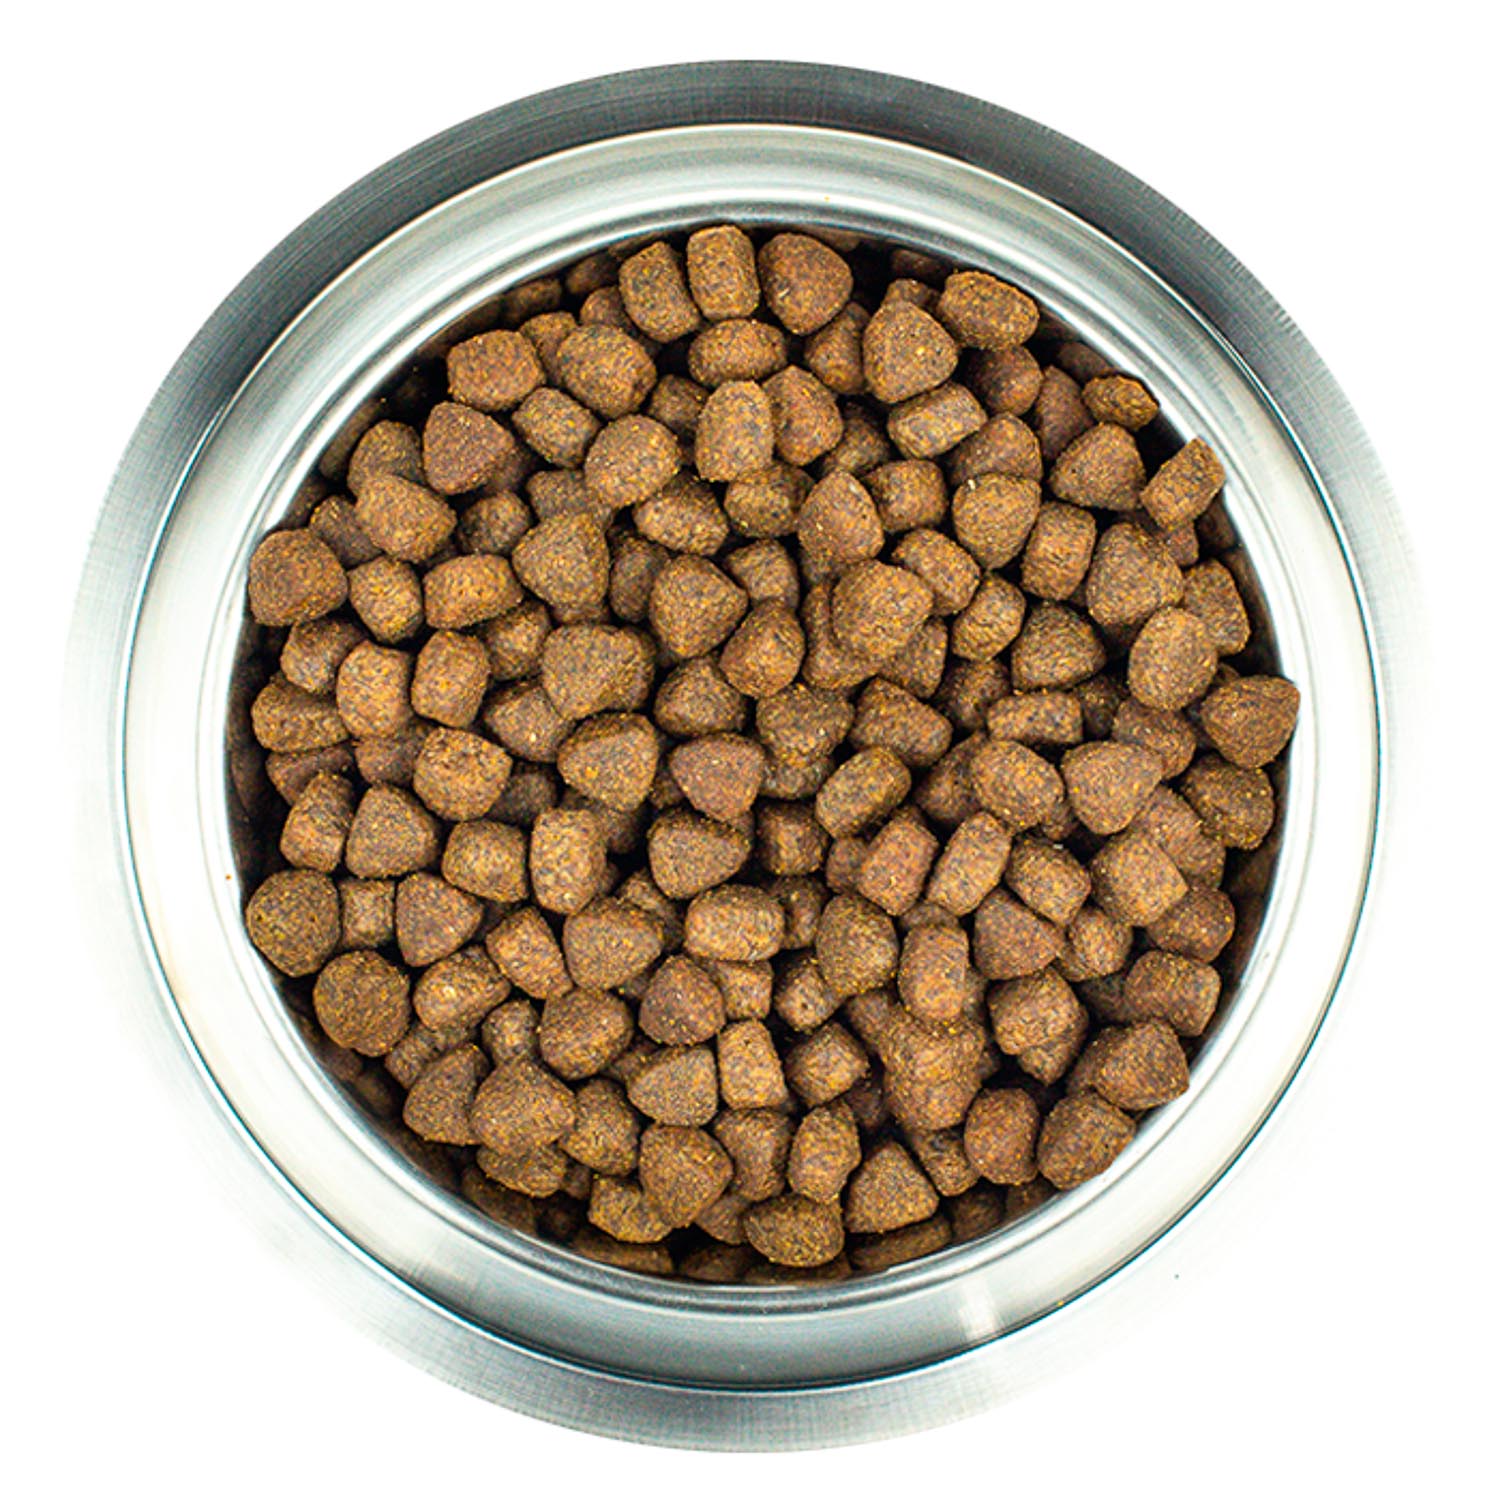 Сухой корм CORE для взрослых собак средних и крупных пород, из лосося с тунцом 1,8 кг